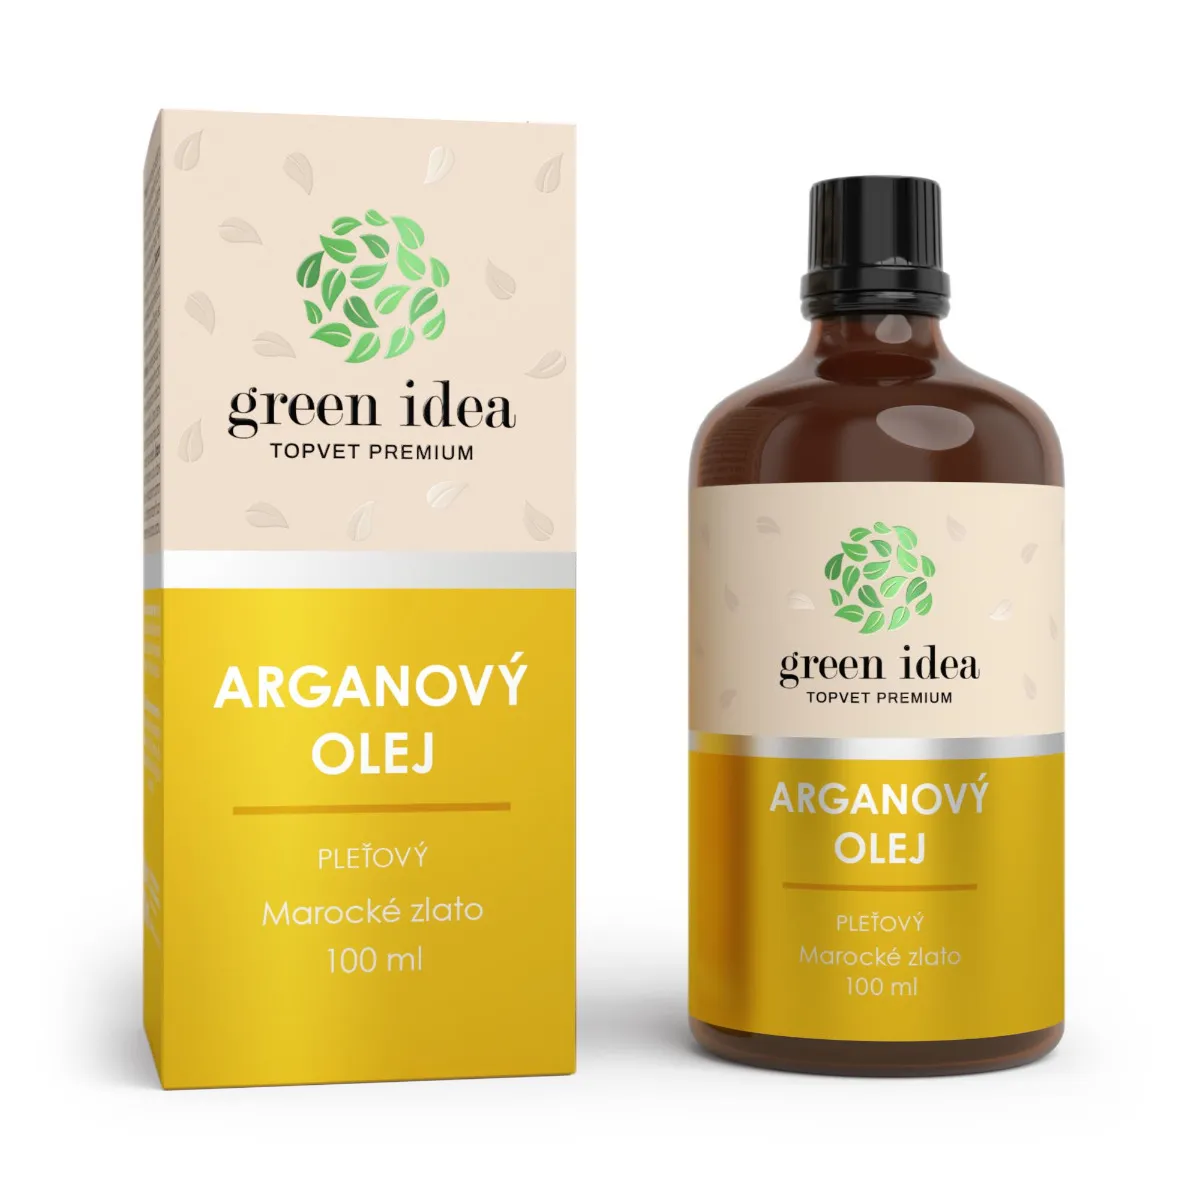 Green idea Arganový olej